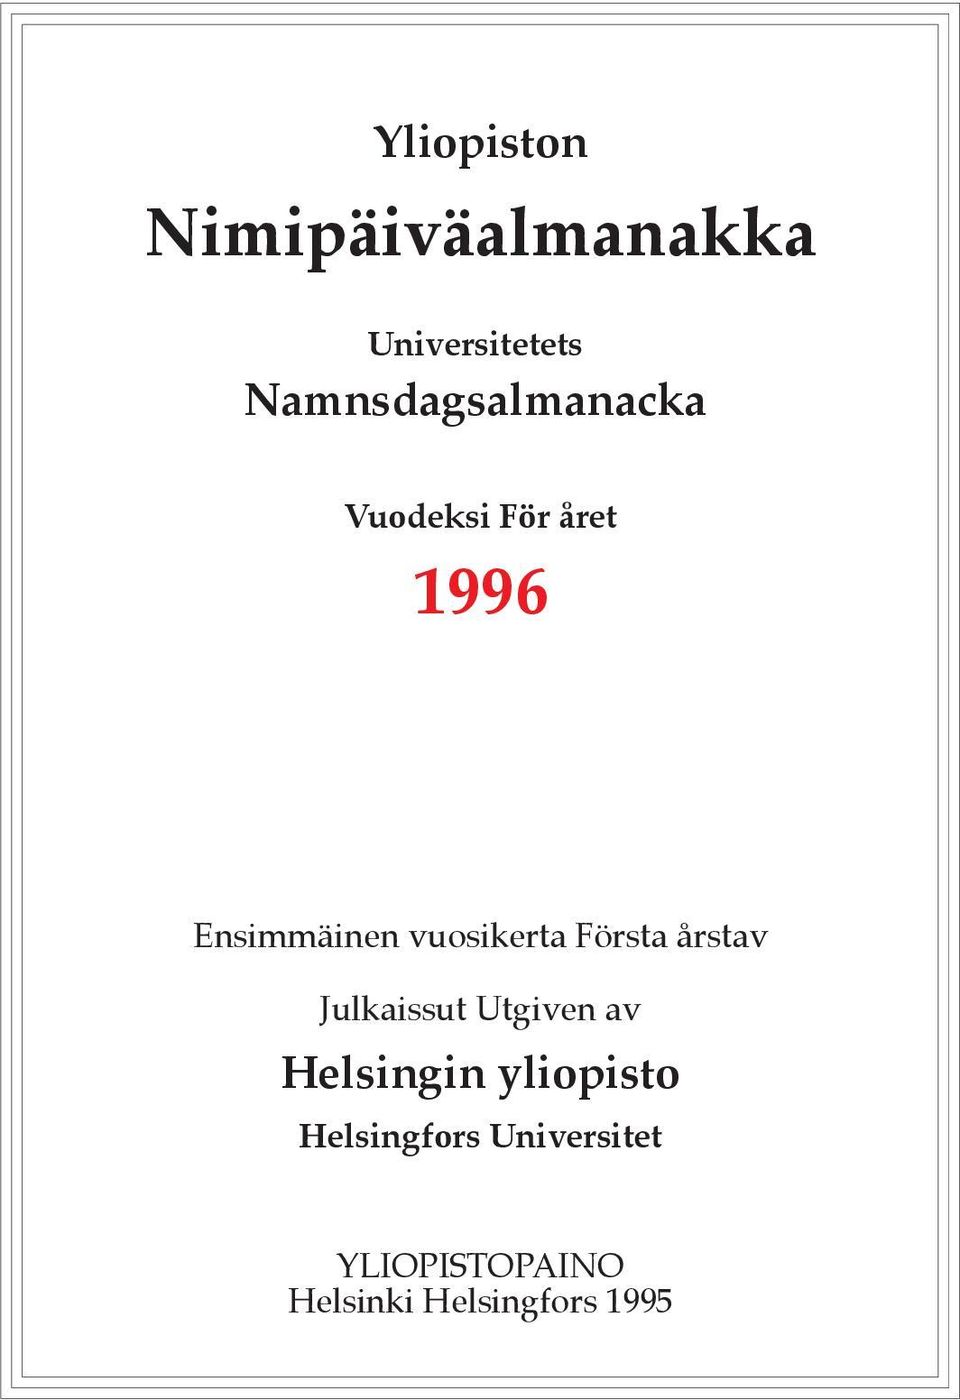 vuosikerta Första årstav Julkaissut Utgiven av Helsingin